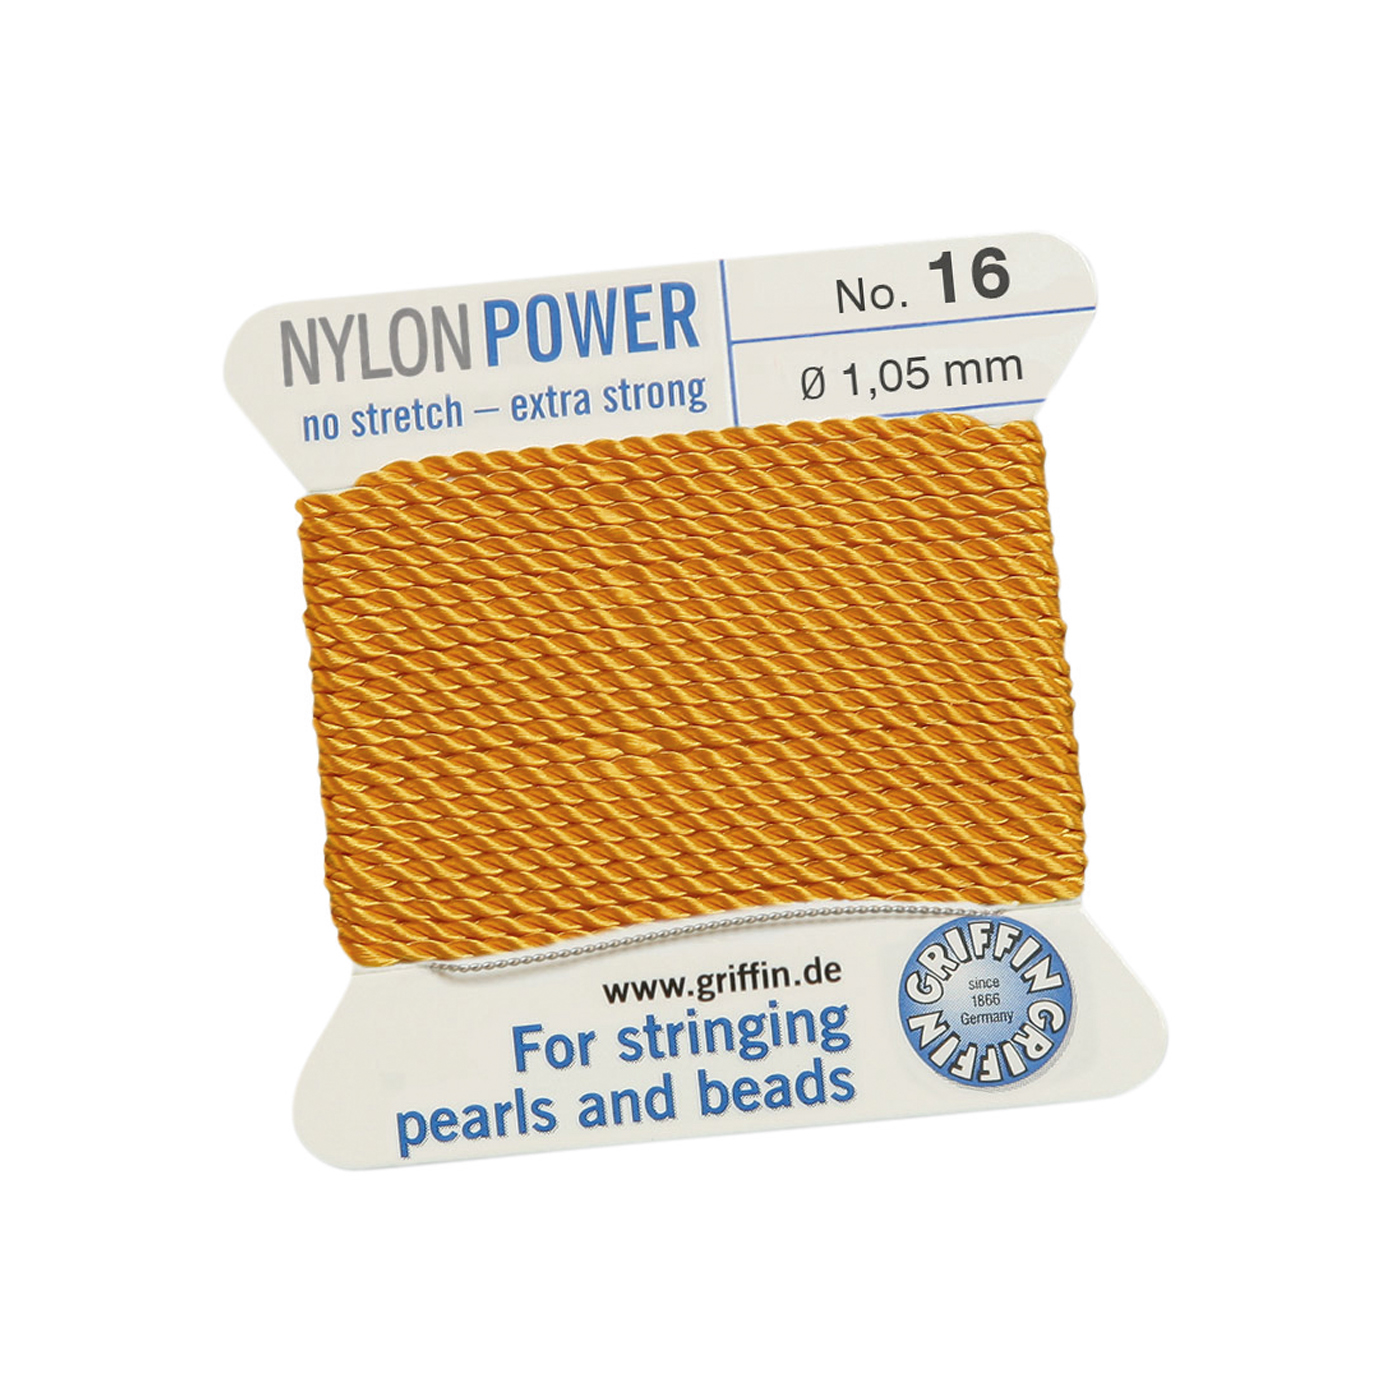 Bead Cord NylonPower, Dark Yellow, No. 16 - 2 m